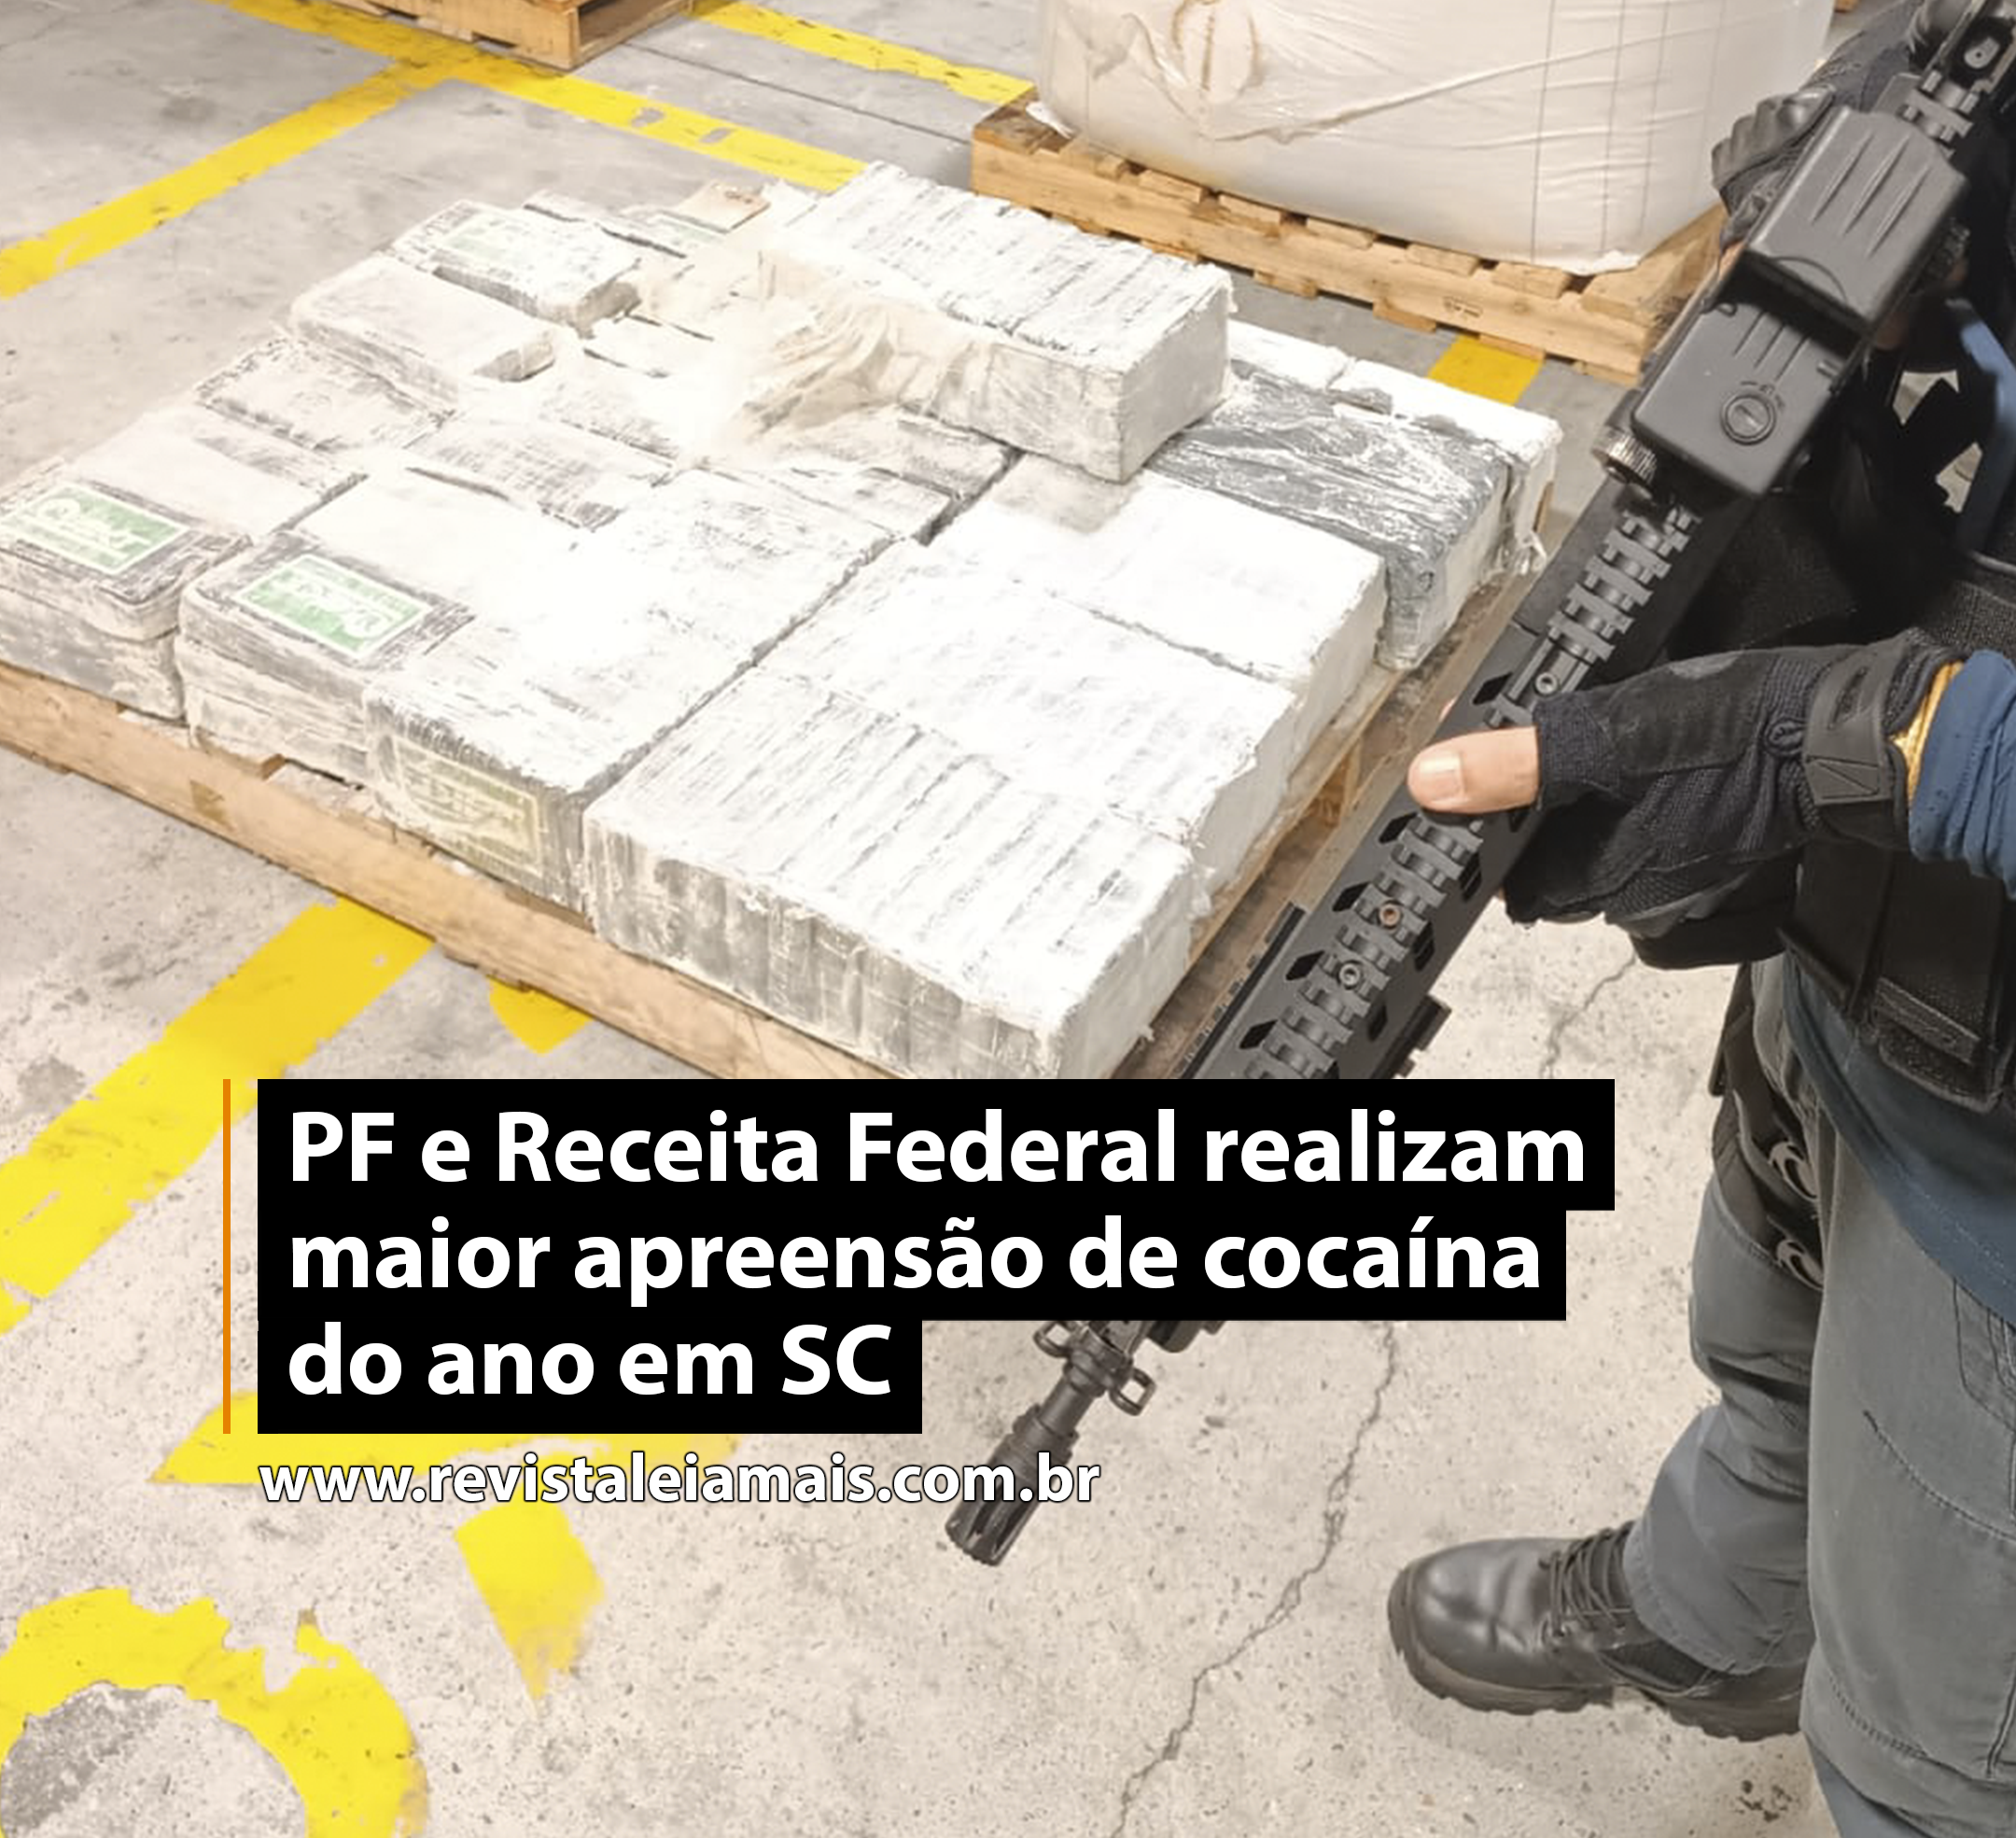 PF e Receita Federal realizam maior apreensão de cocaína do ano em SC